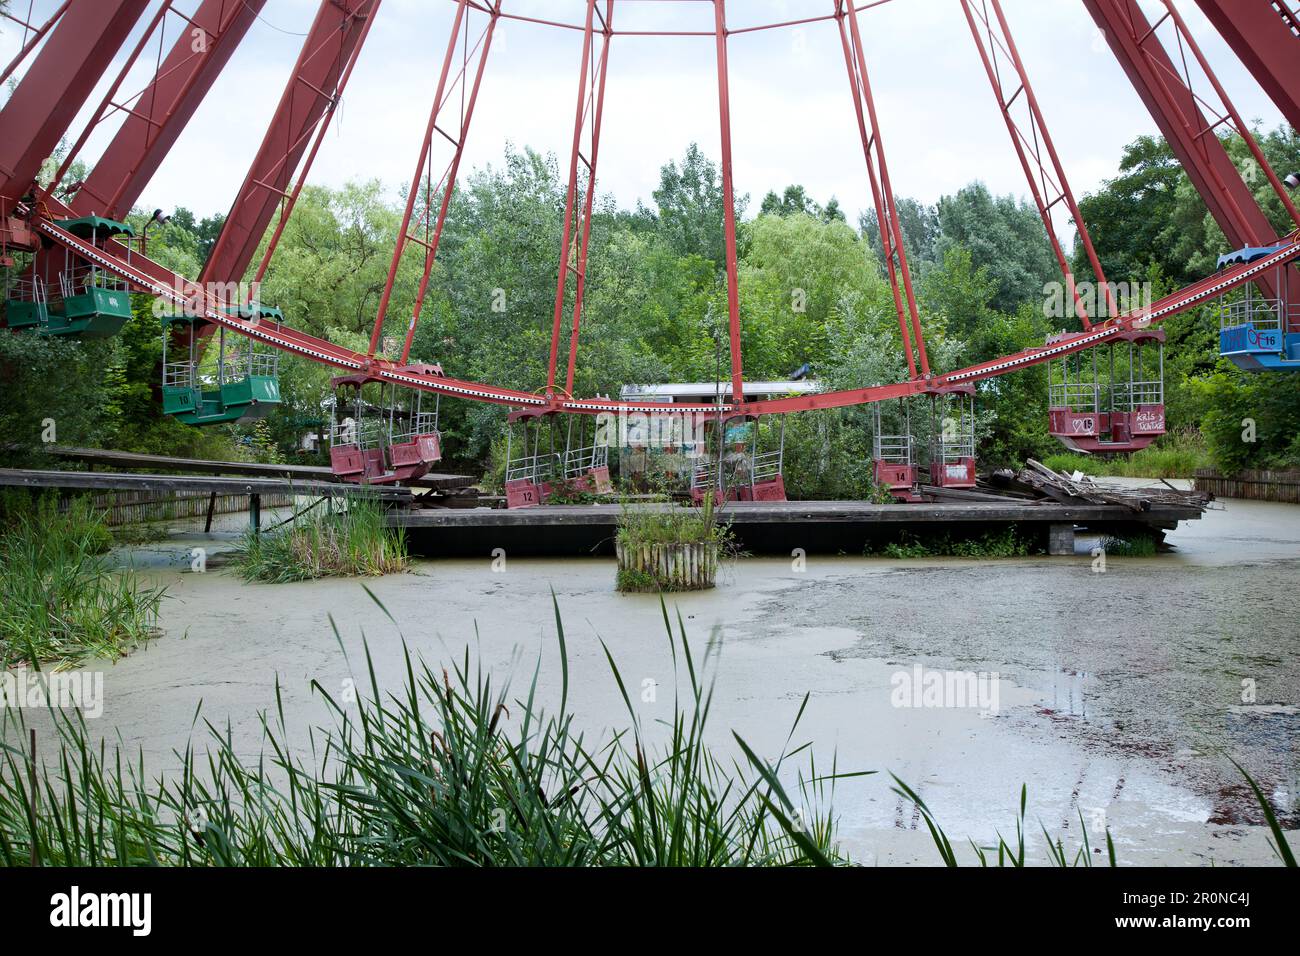 Ruota panoramica troppo grande nel parco divertimenti in disuso a Plänterwald, Treptow, Berlino, Germania Foto Stock